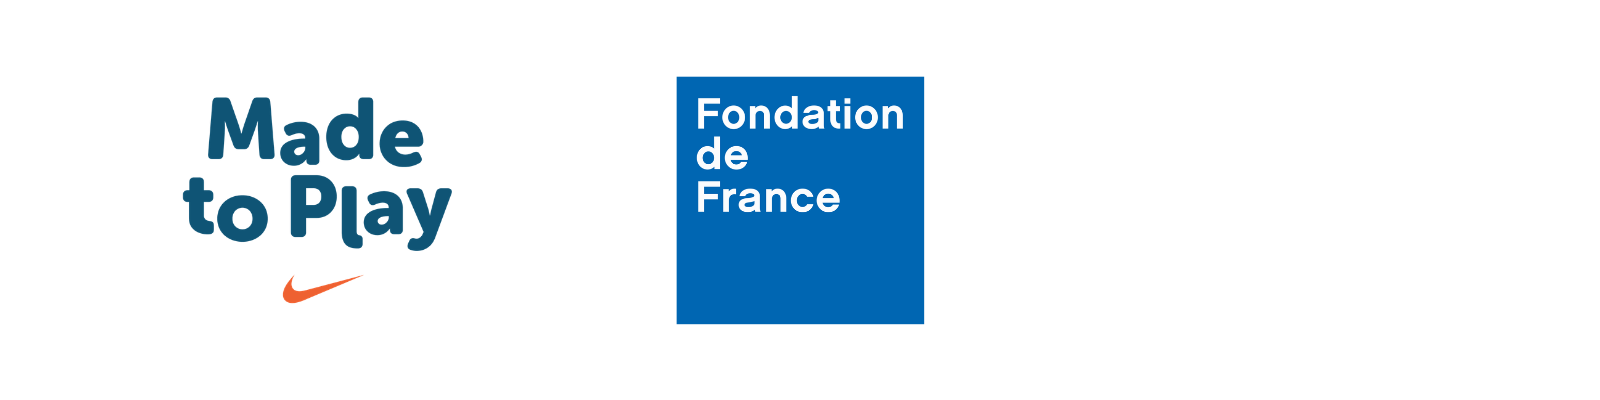 made to play Fondation de France